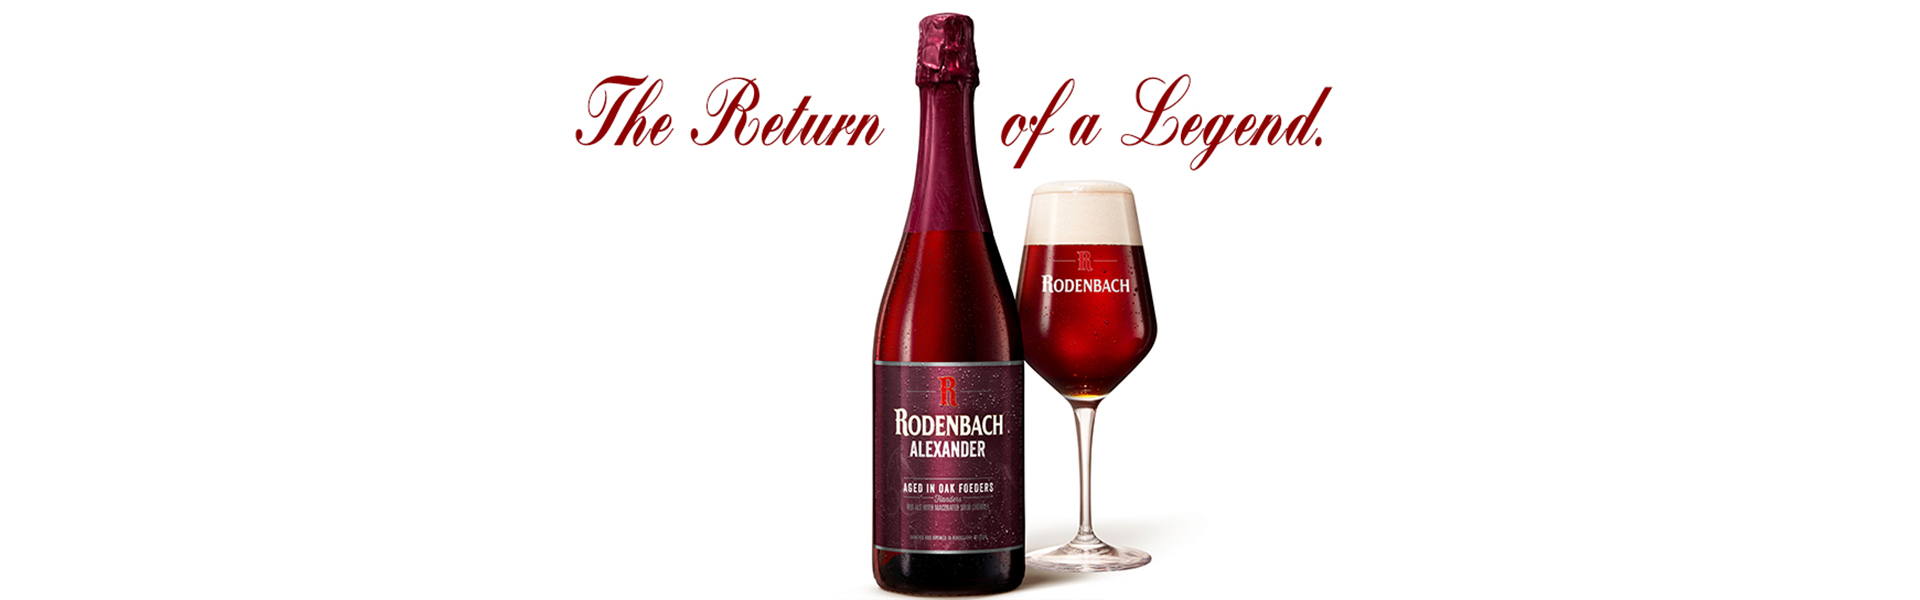 Rodenbach Alexander – legendariska ölet lanseras i beställningssortimentet.